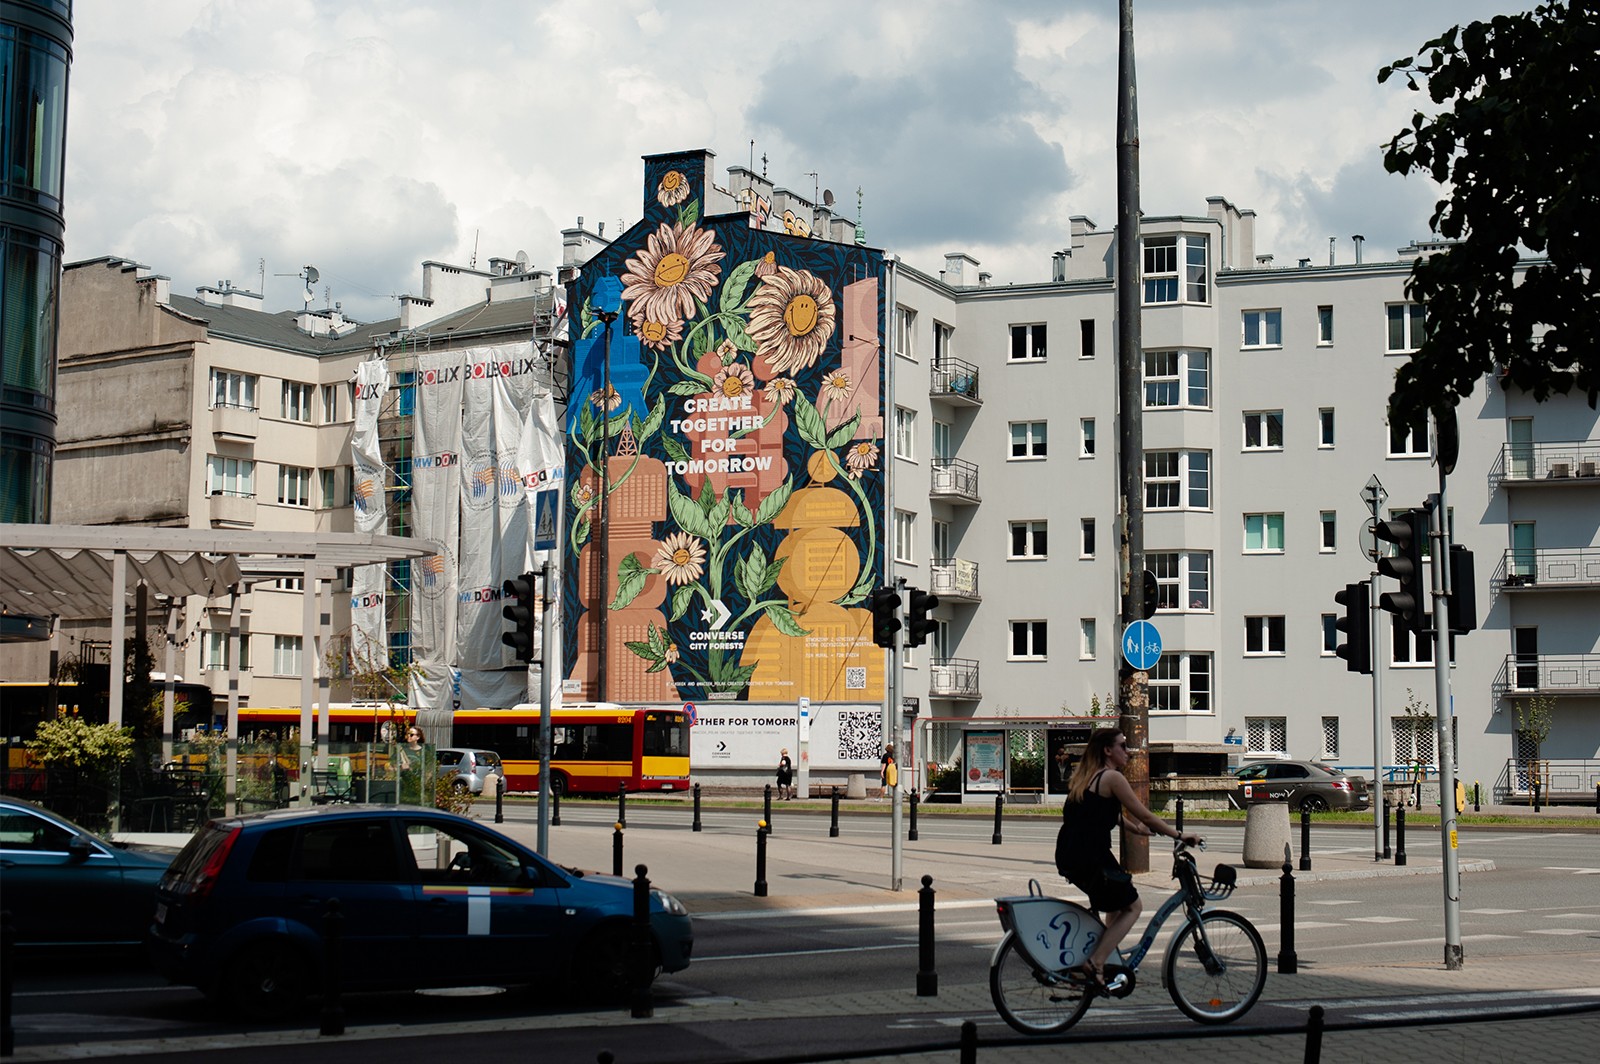 Mural artystyczny Converse w Warszawie | CREATE TOGETHER FOR TOMORROW | Portfolio